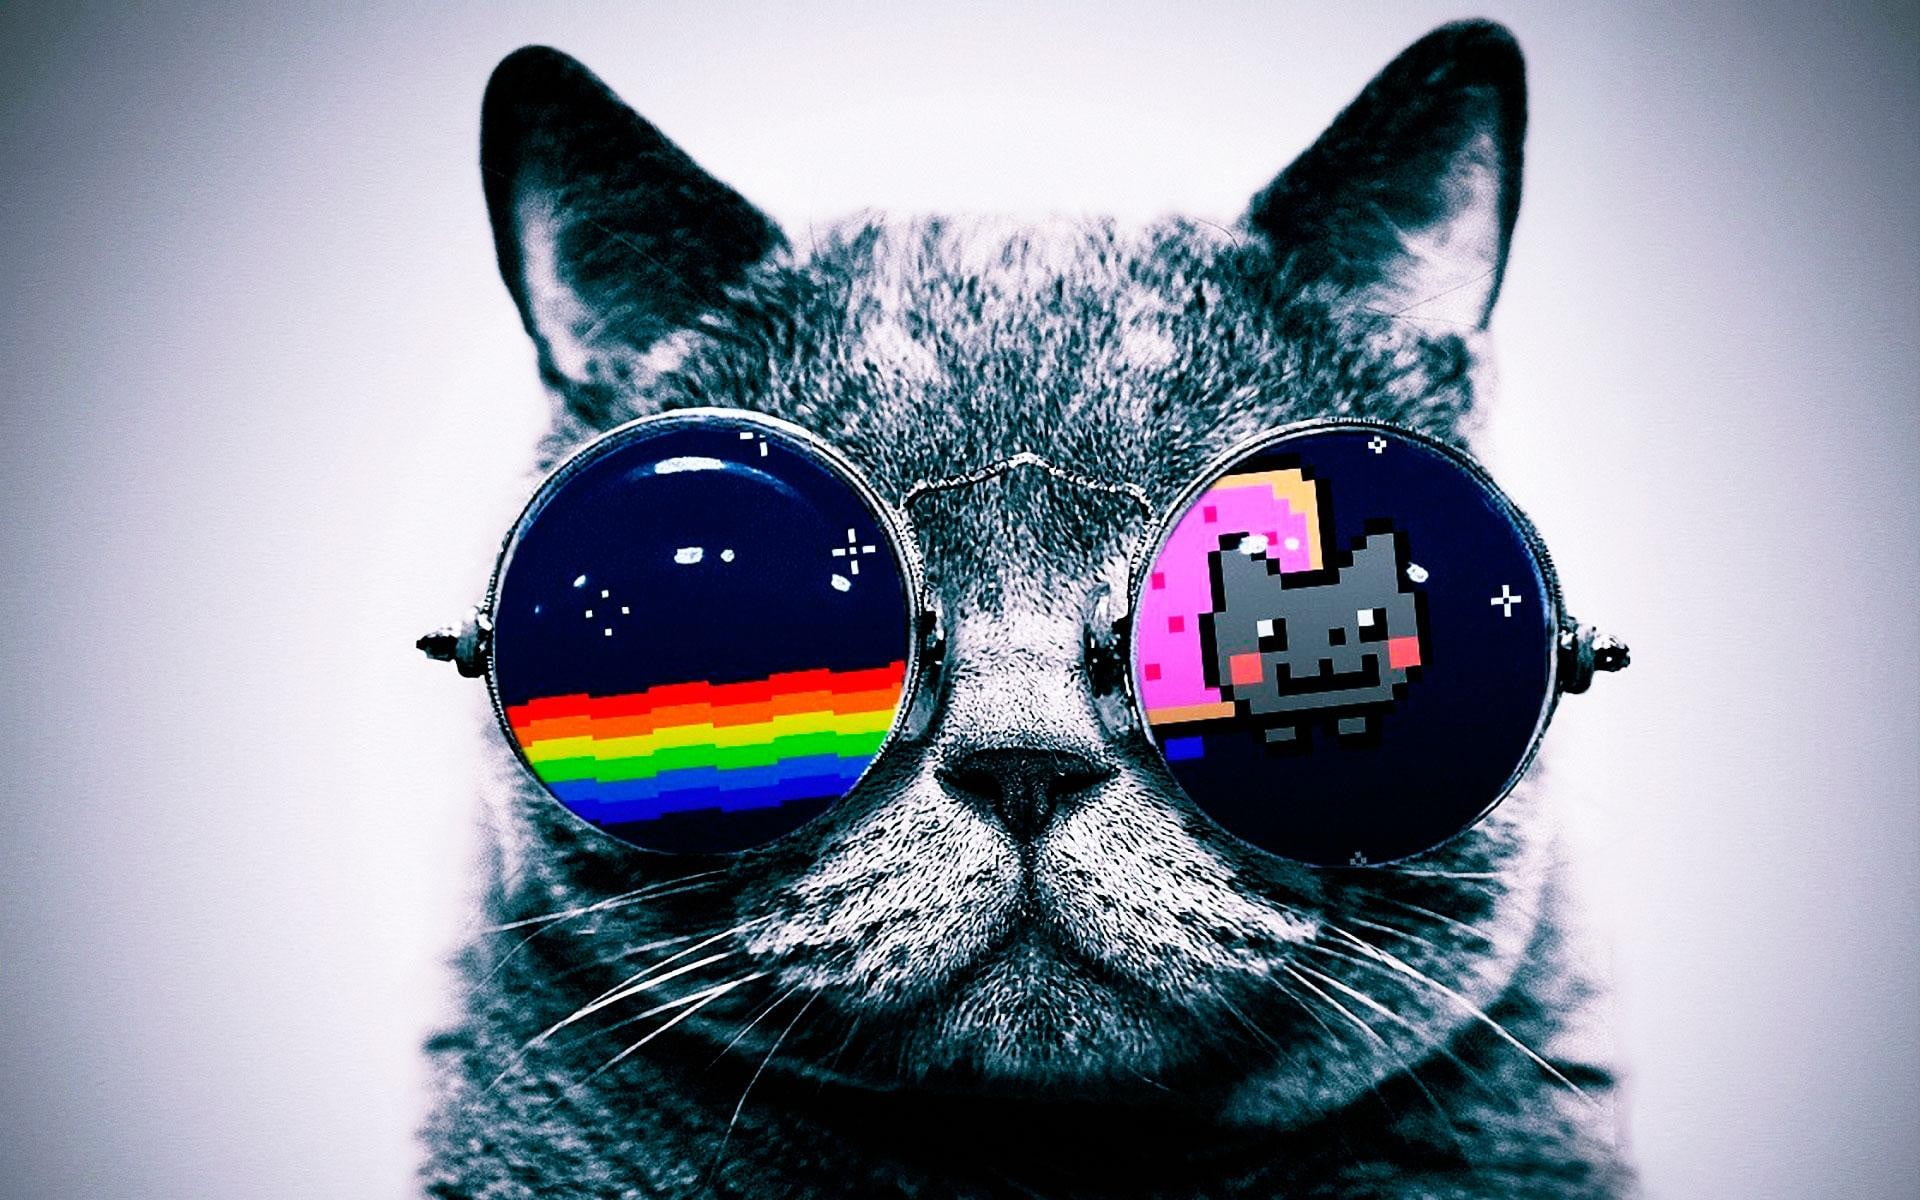 gray cat wearing sunglasses wallpaper, Nyan Cat, digital art